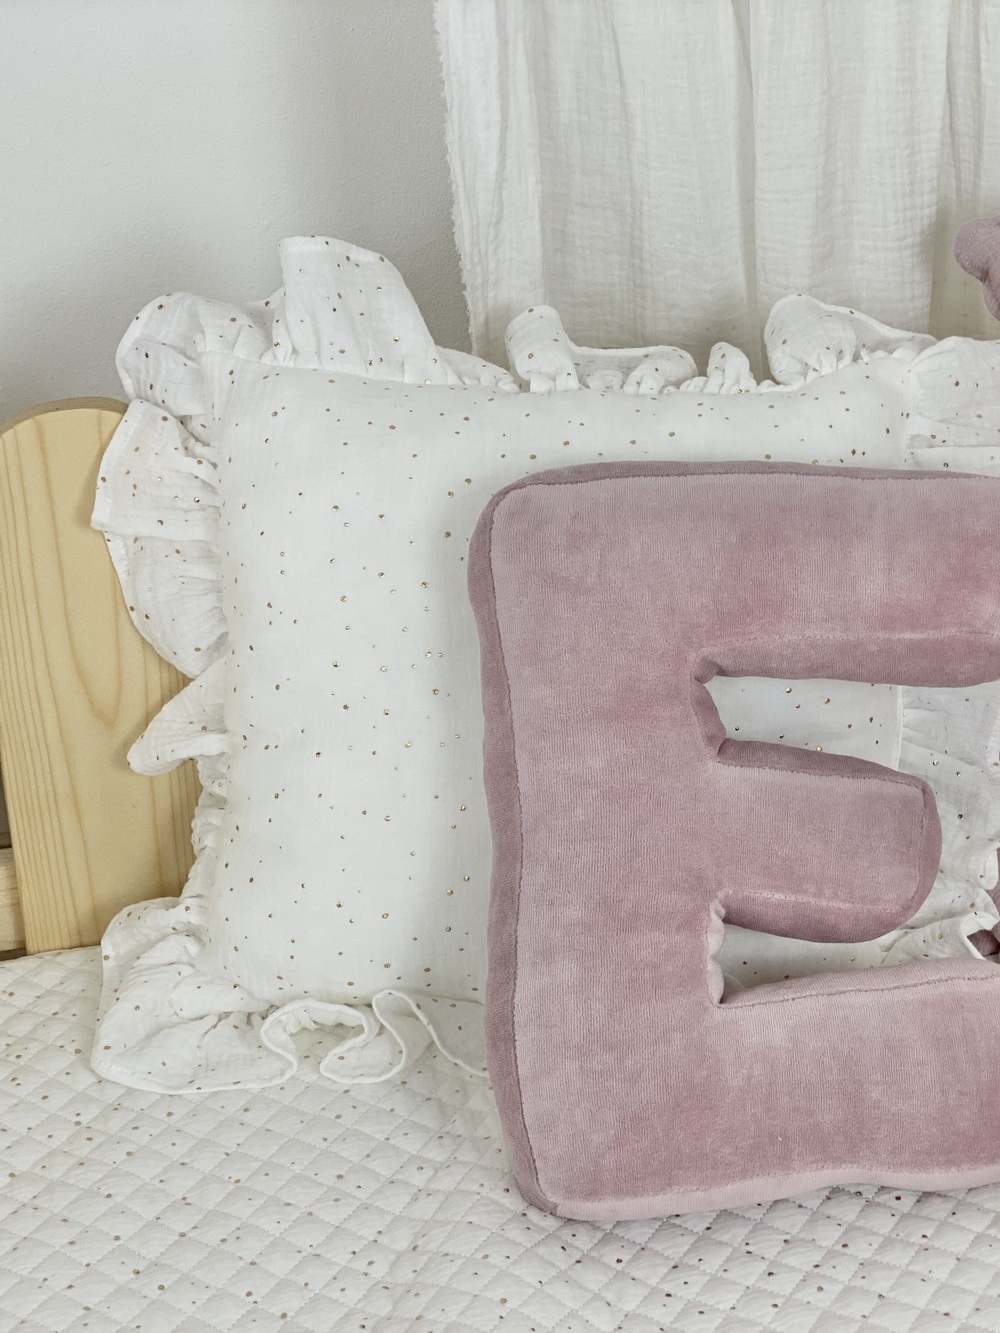 Children's Decorative Pillow Monogram Pink Velvet